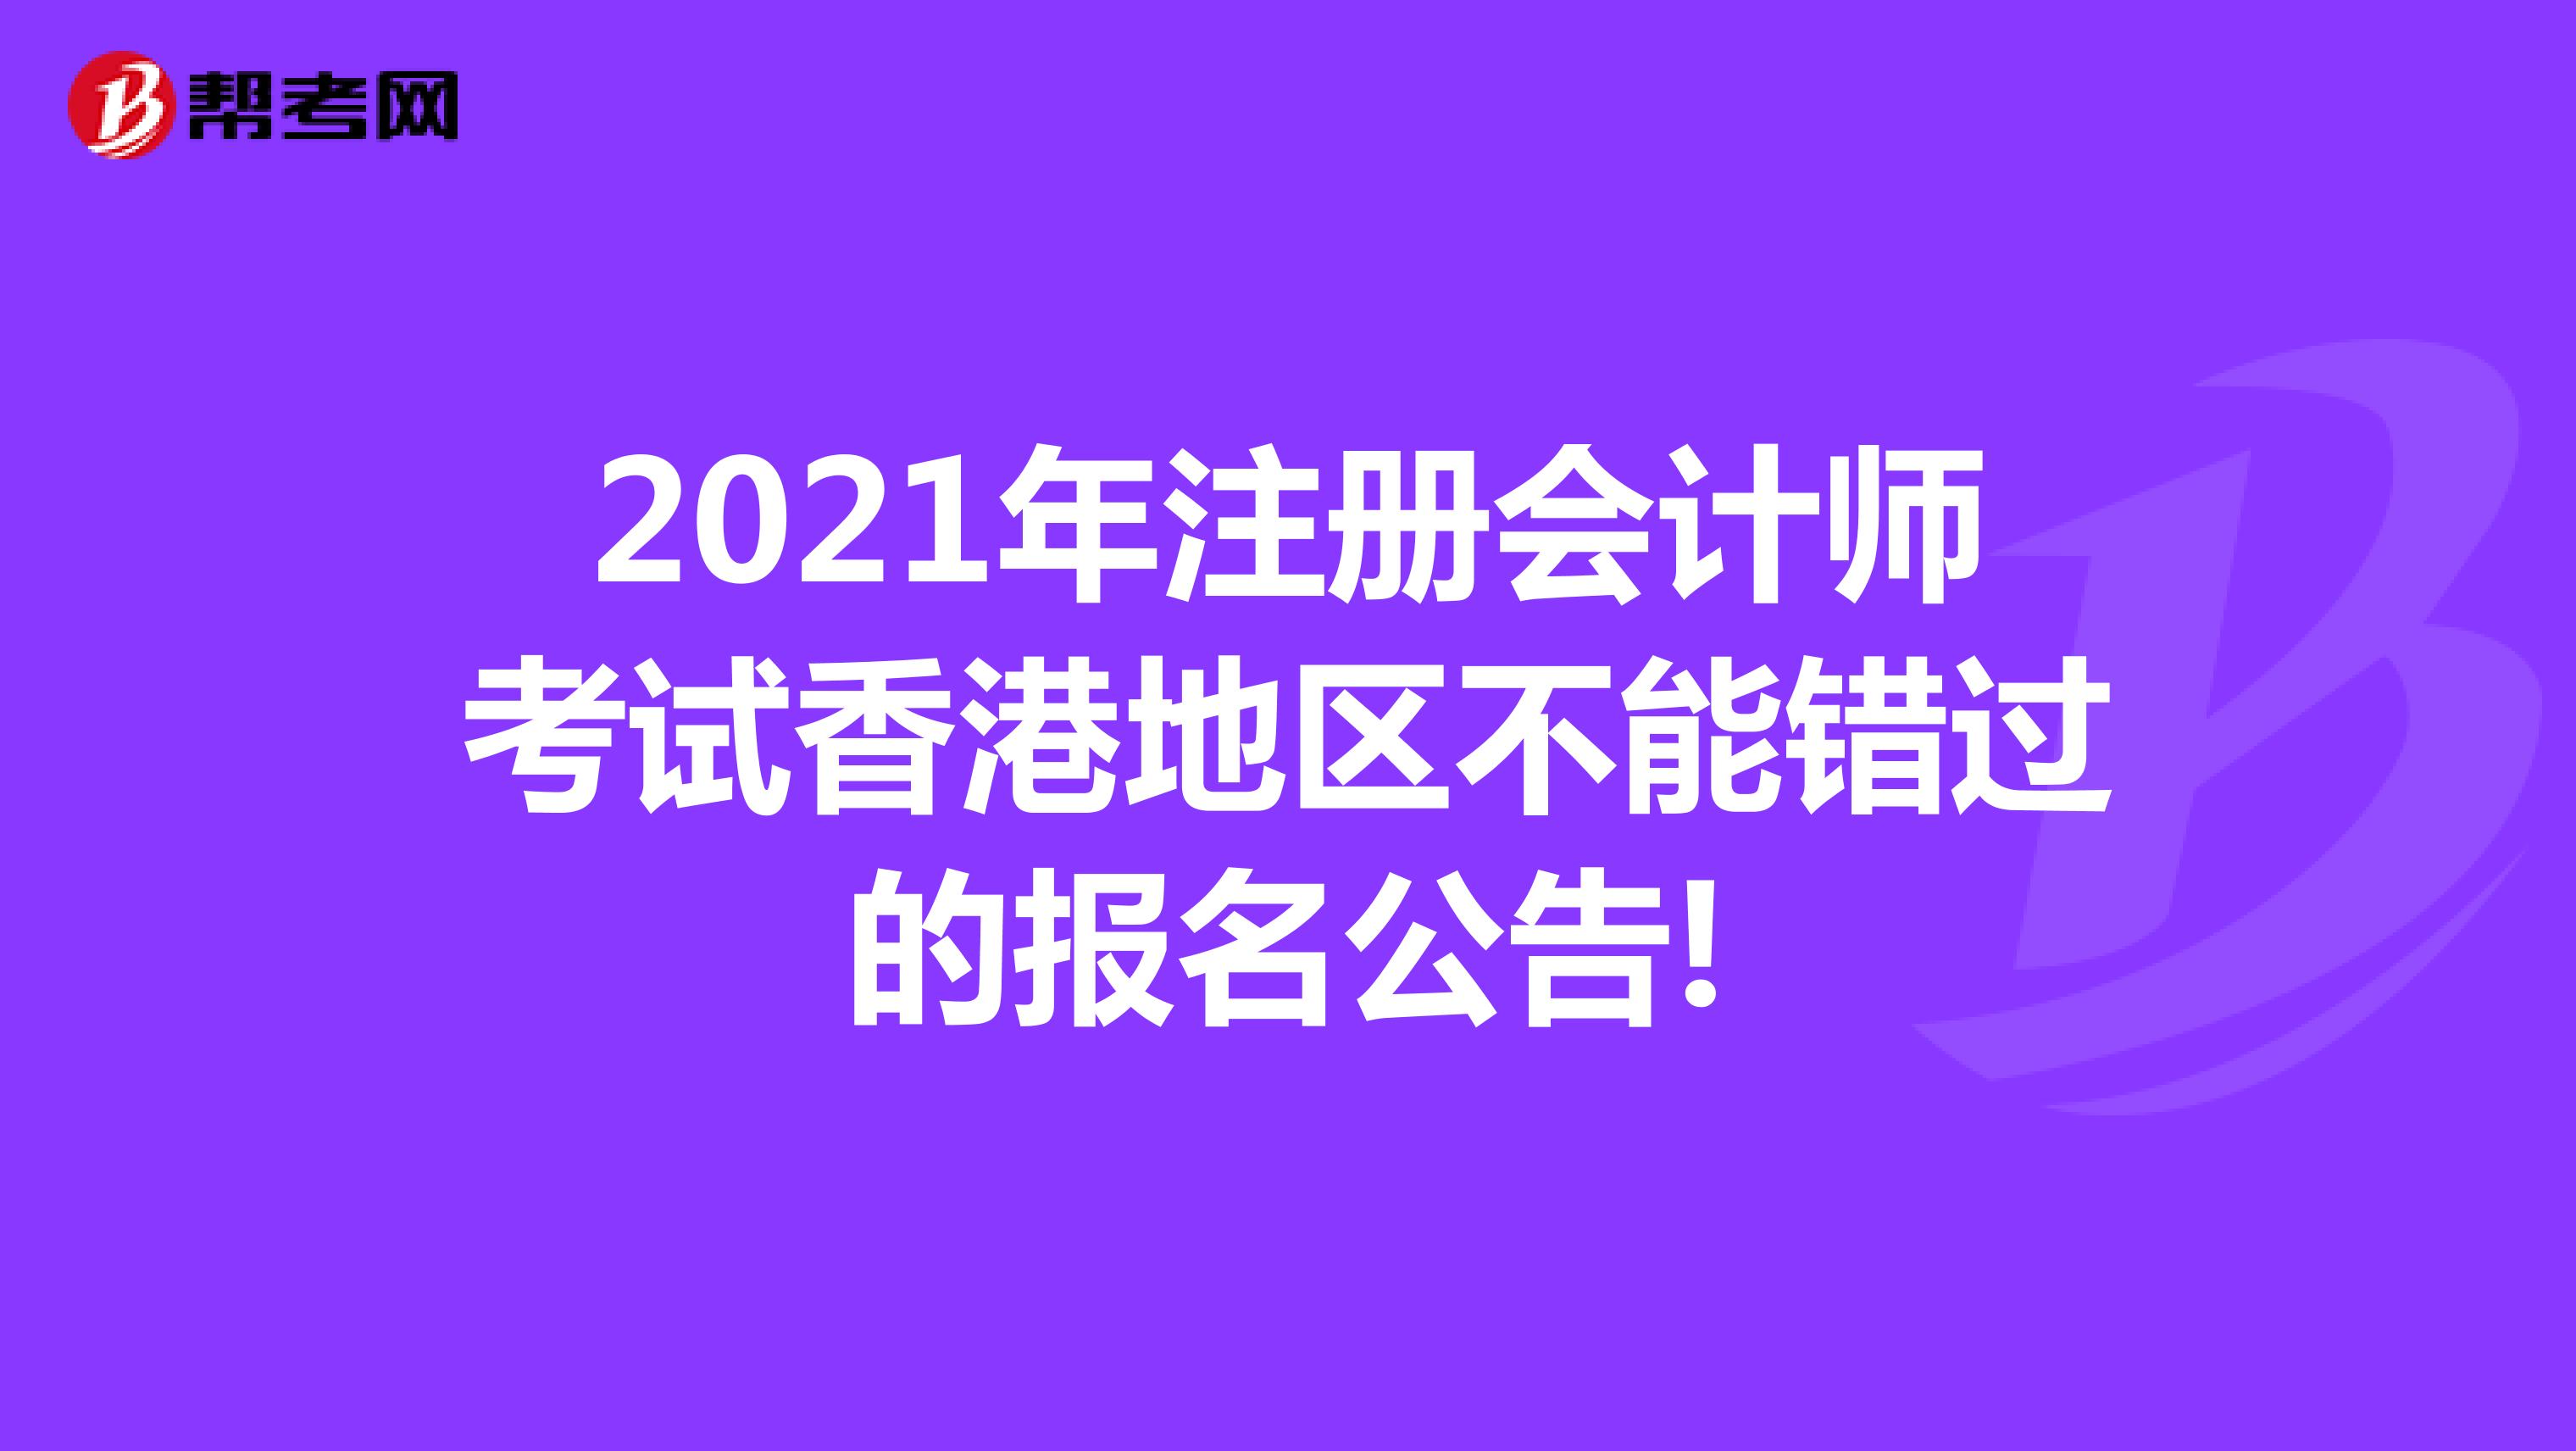 2021年注册会计师考试香港地区不能错过的报名公告!